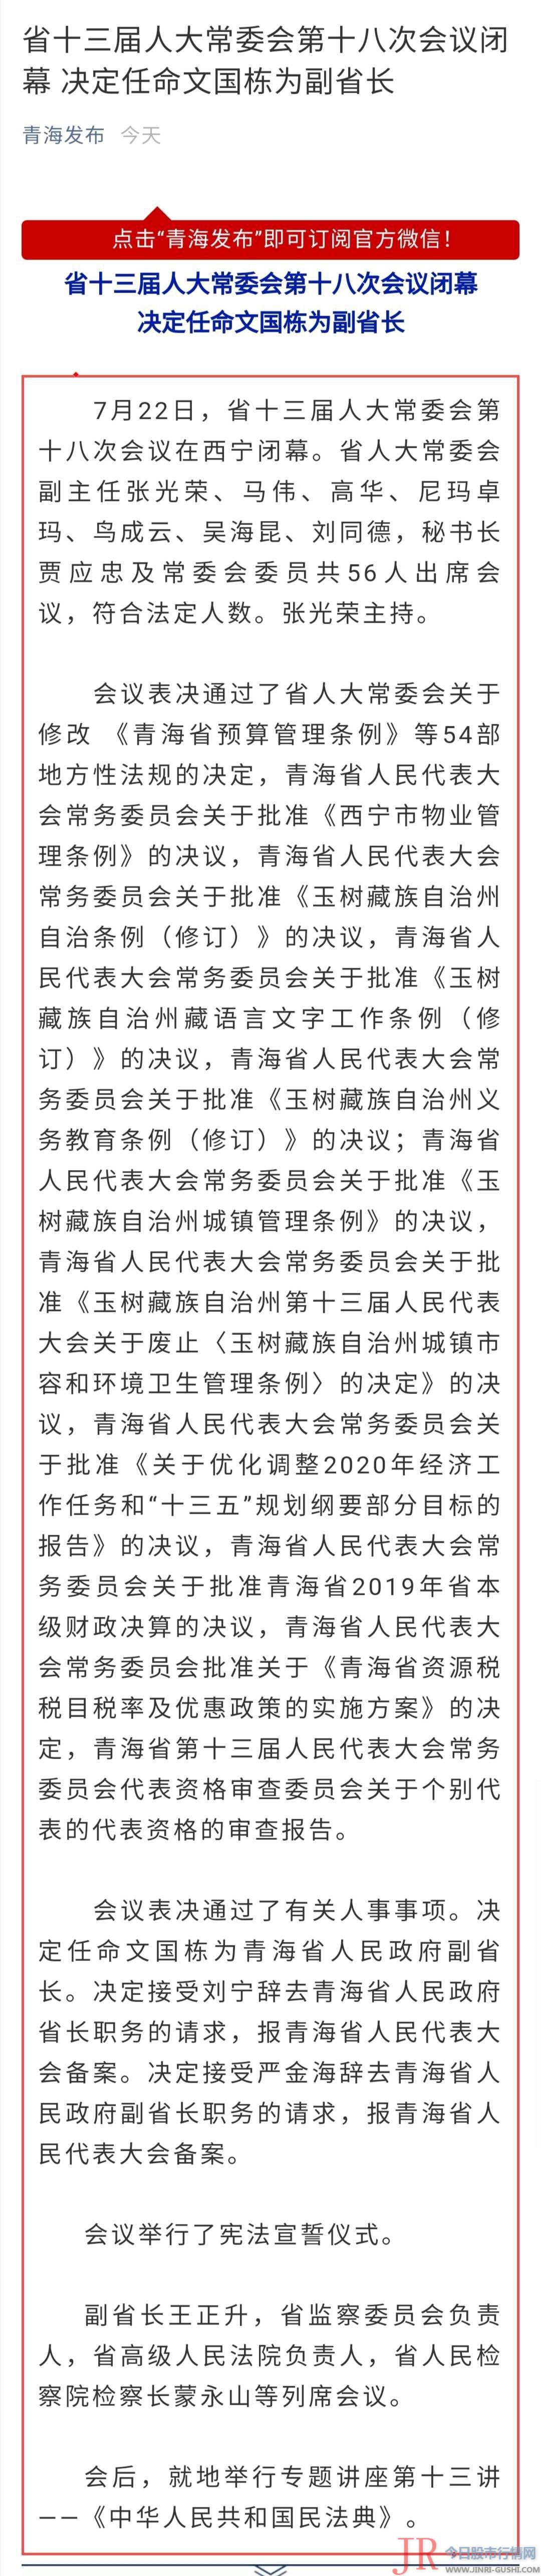 报青海省人民代表大会立案